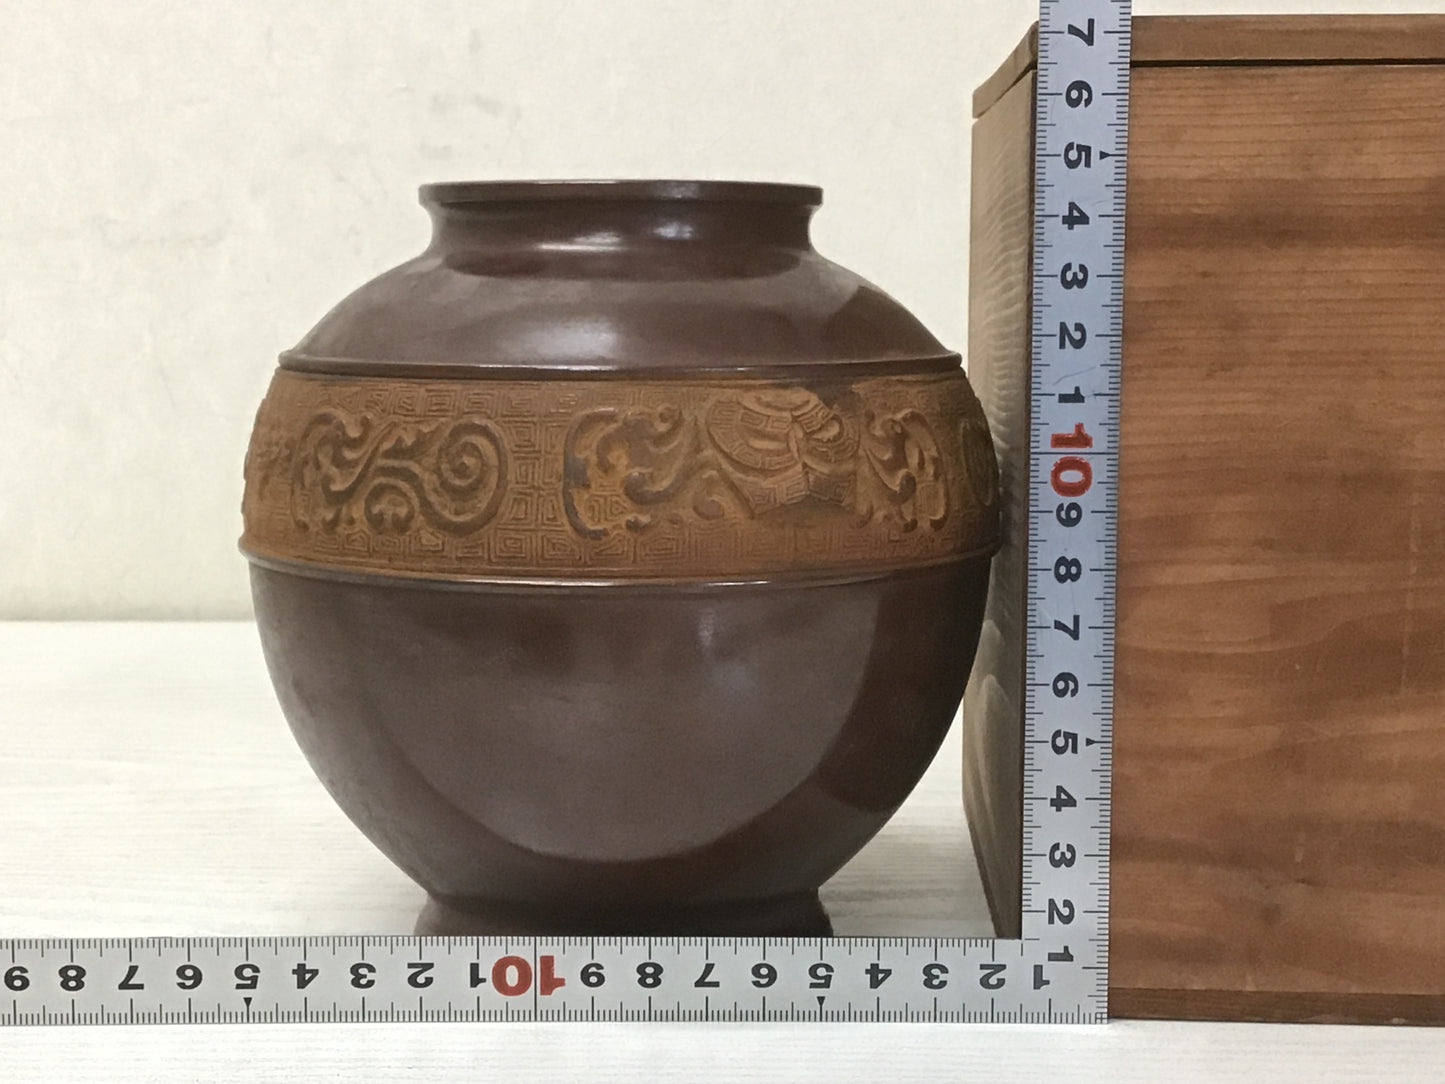 Y1448 FLOWER VASE cast copper box home decor Japan antique ikebana kabin